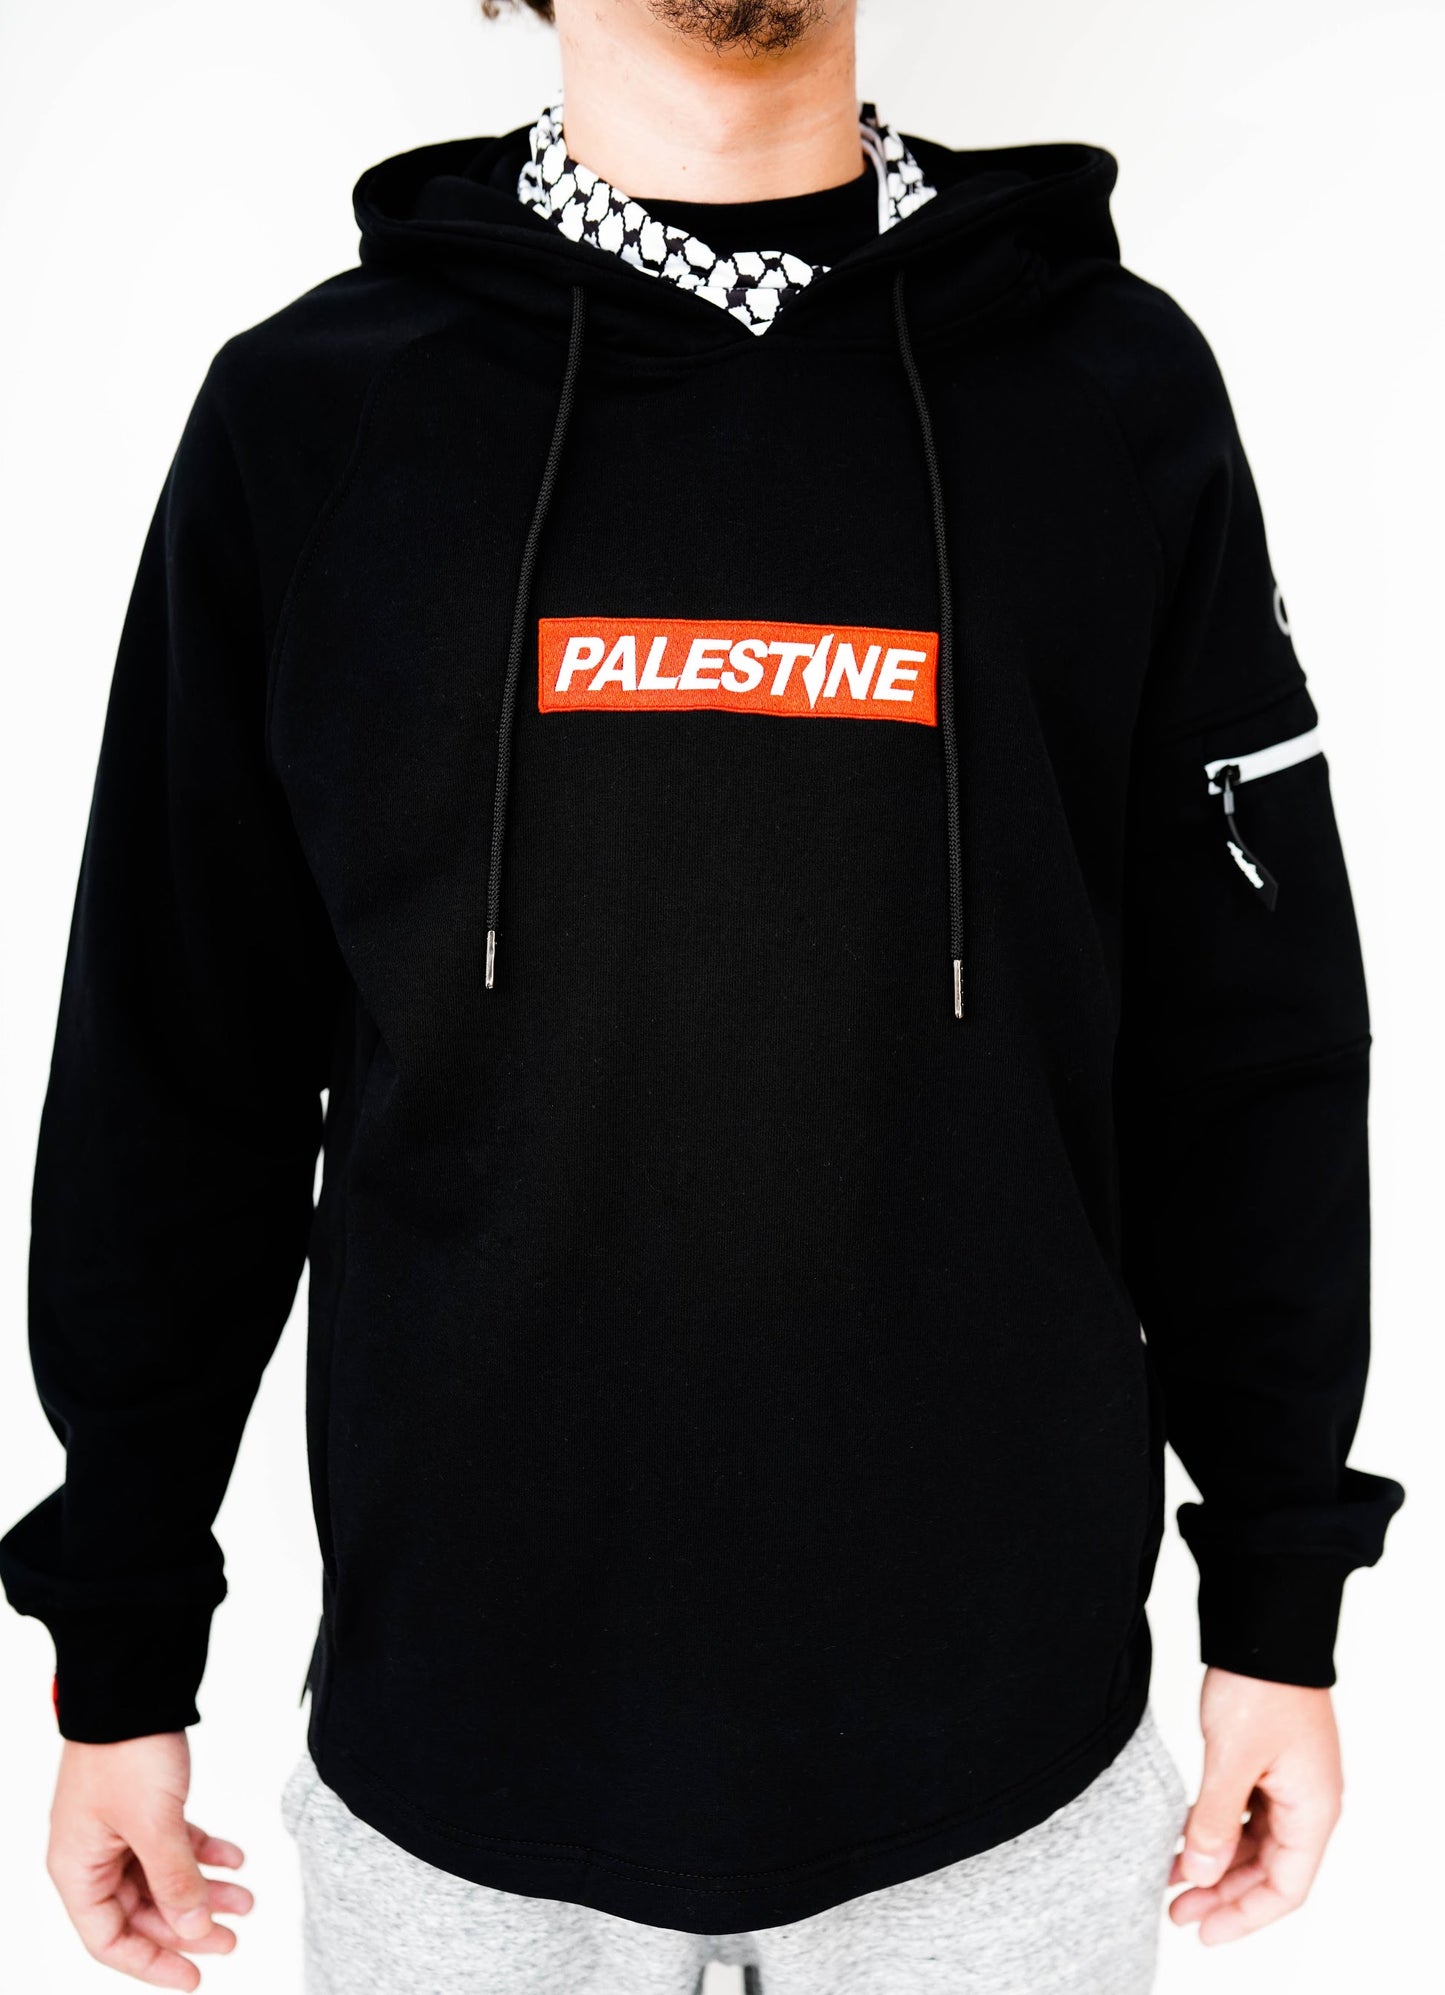 Palestine Pull Out Kuffiyeh Hoodie